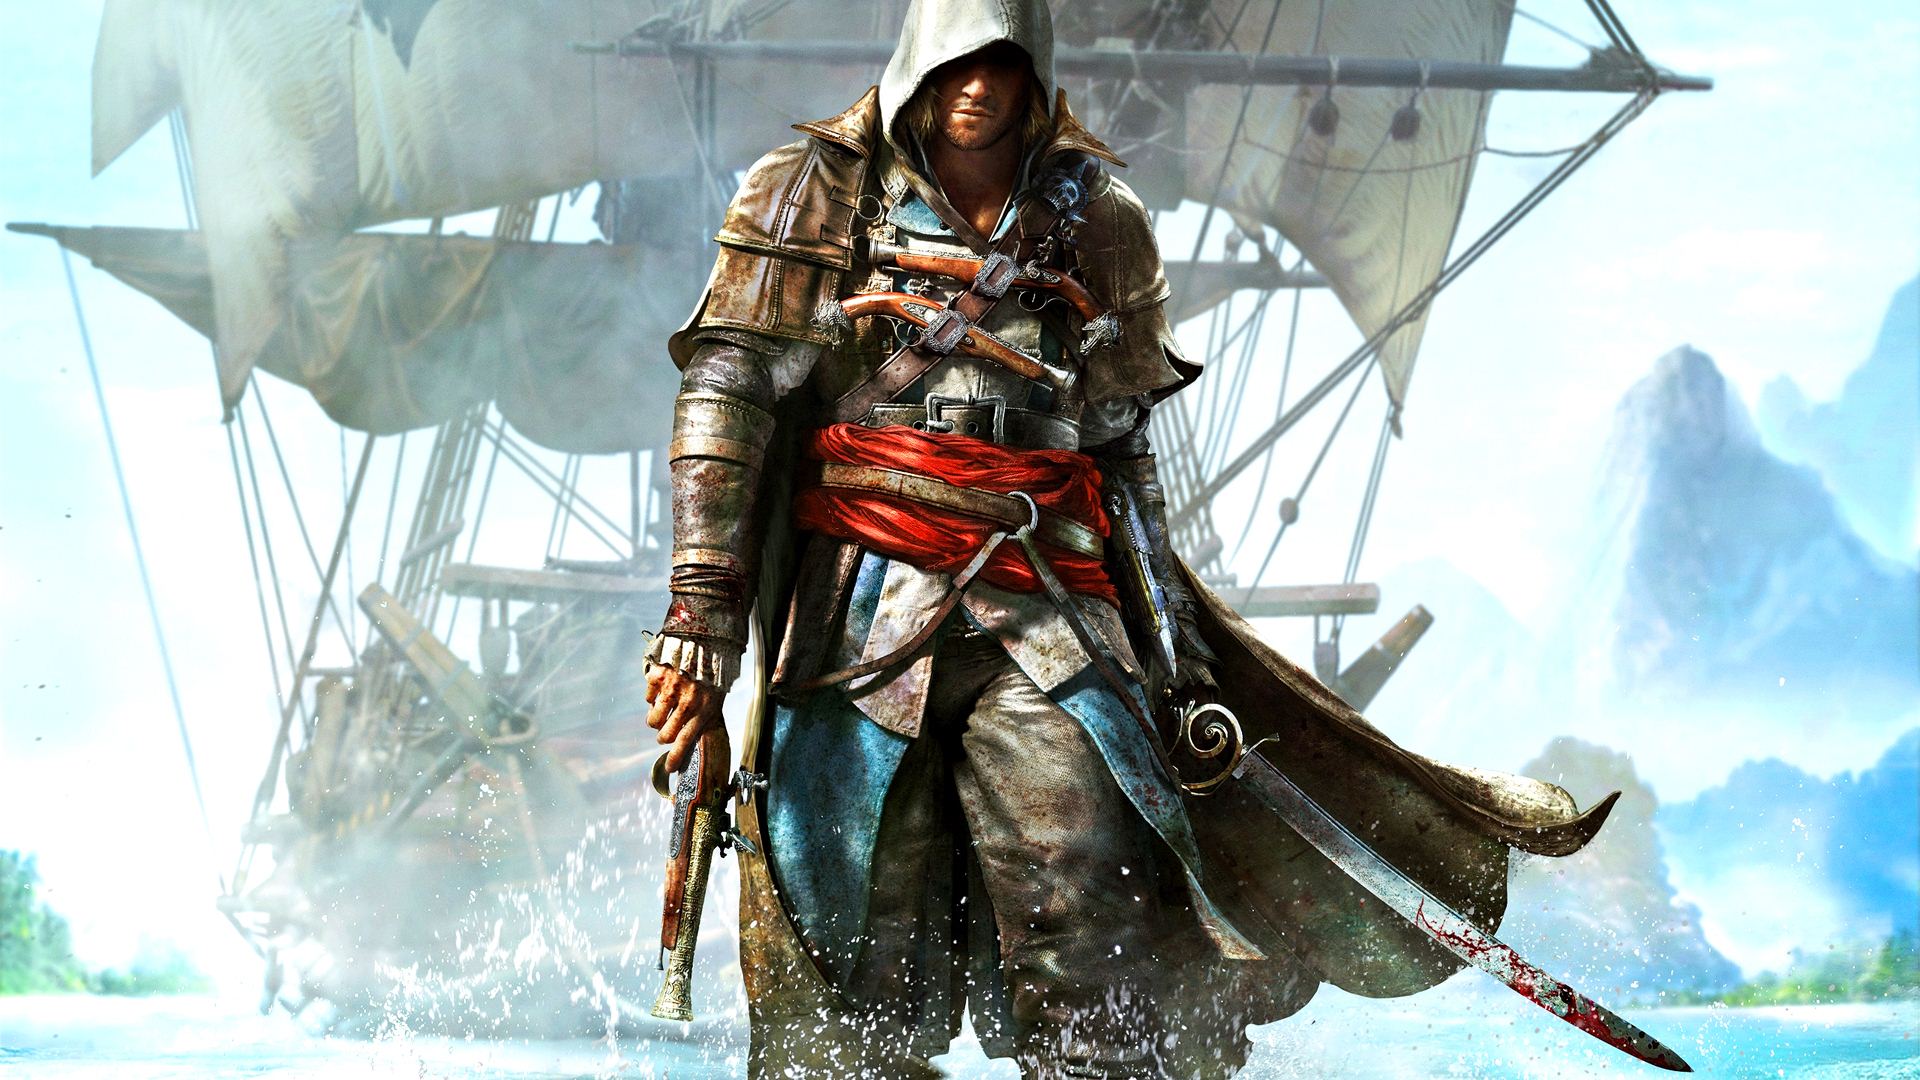 Assassins Creed Unity 1080p Wallpaper Wpt7202198 - Hd Games Assassins Creed , HD Wallpaper & Backgrounds